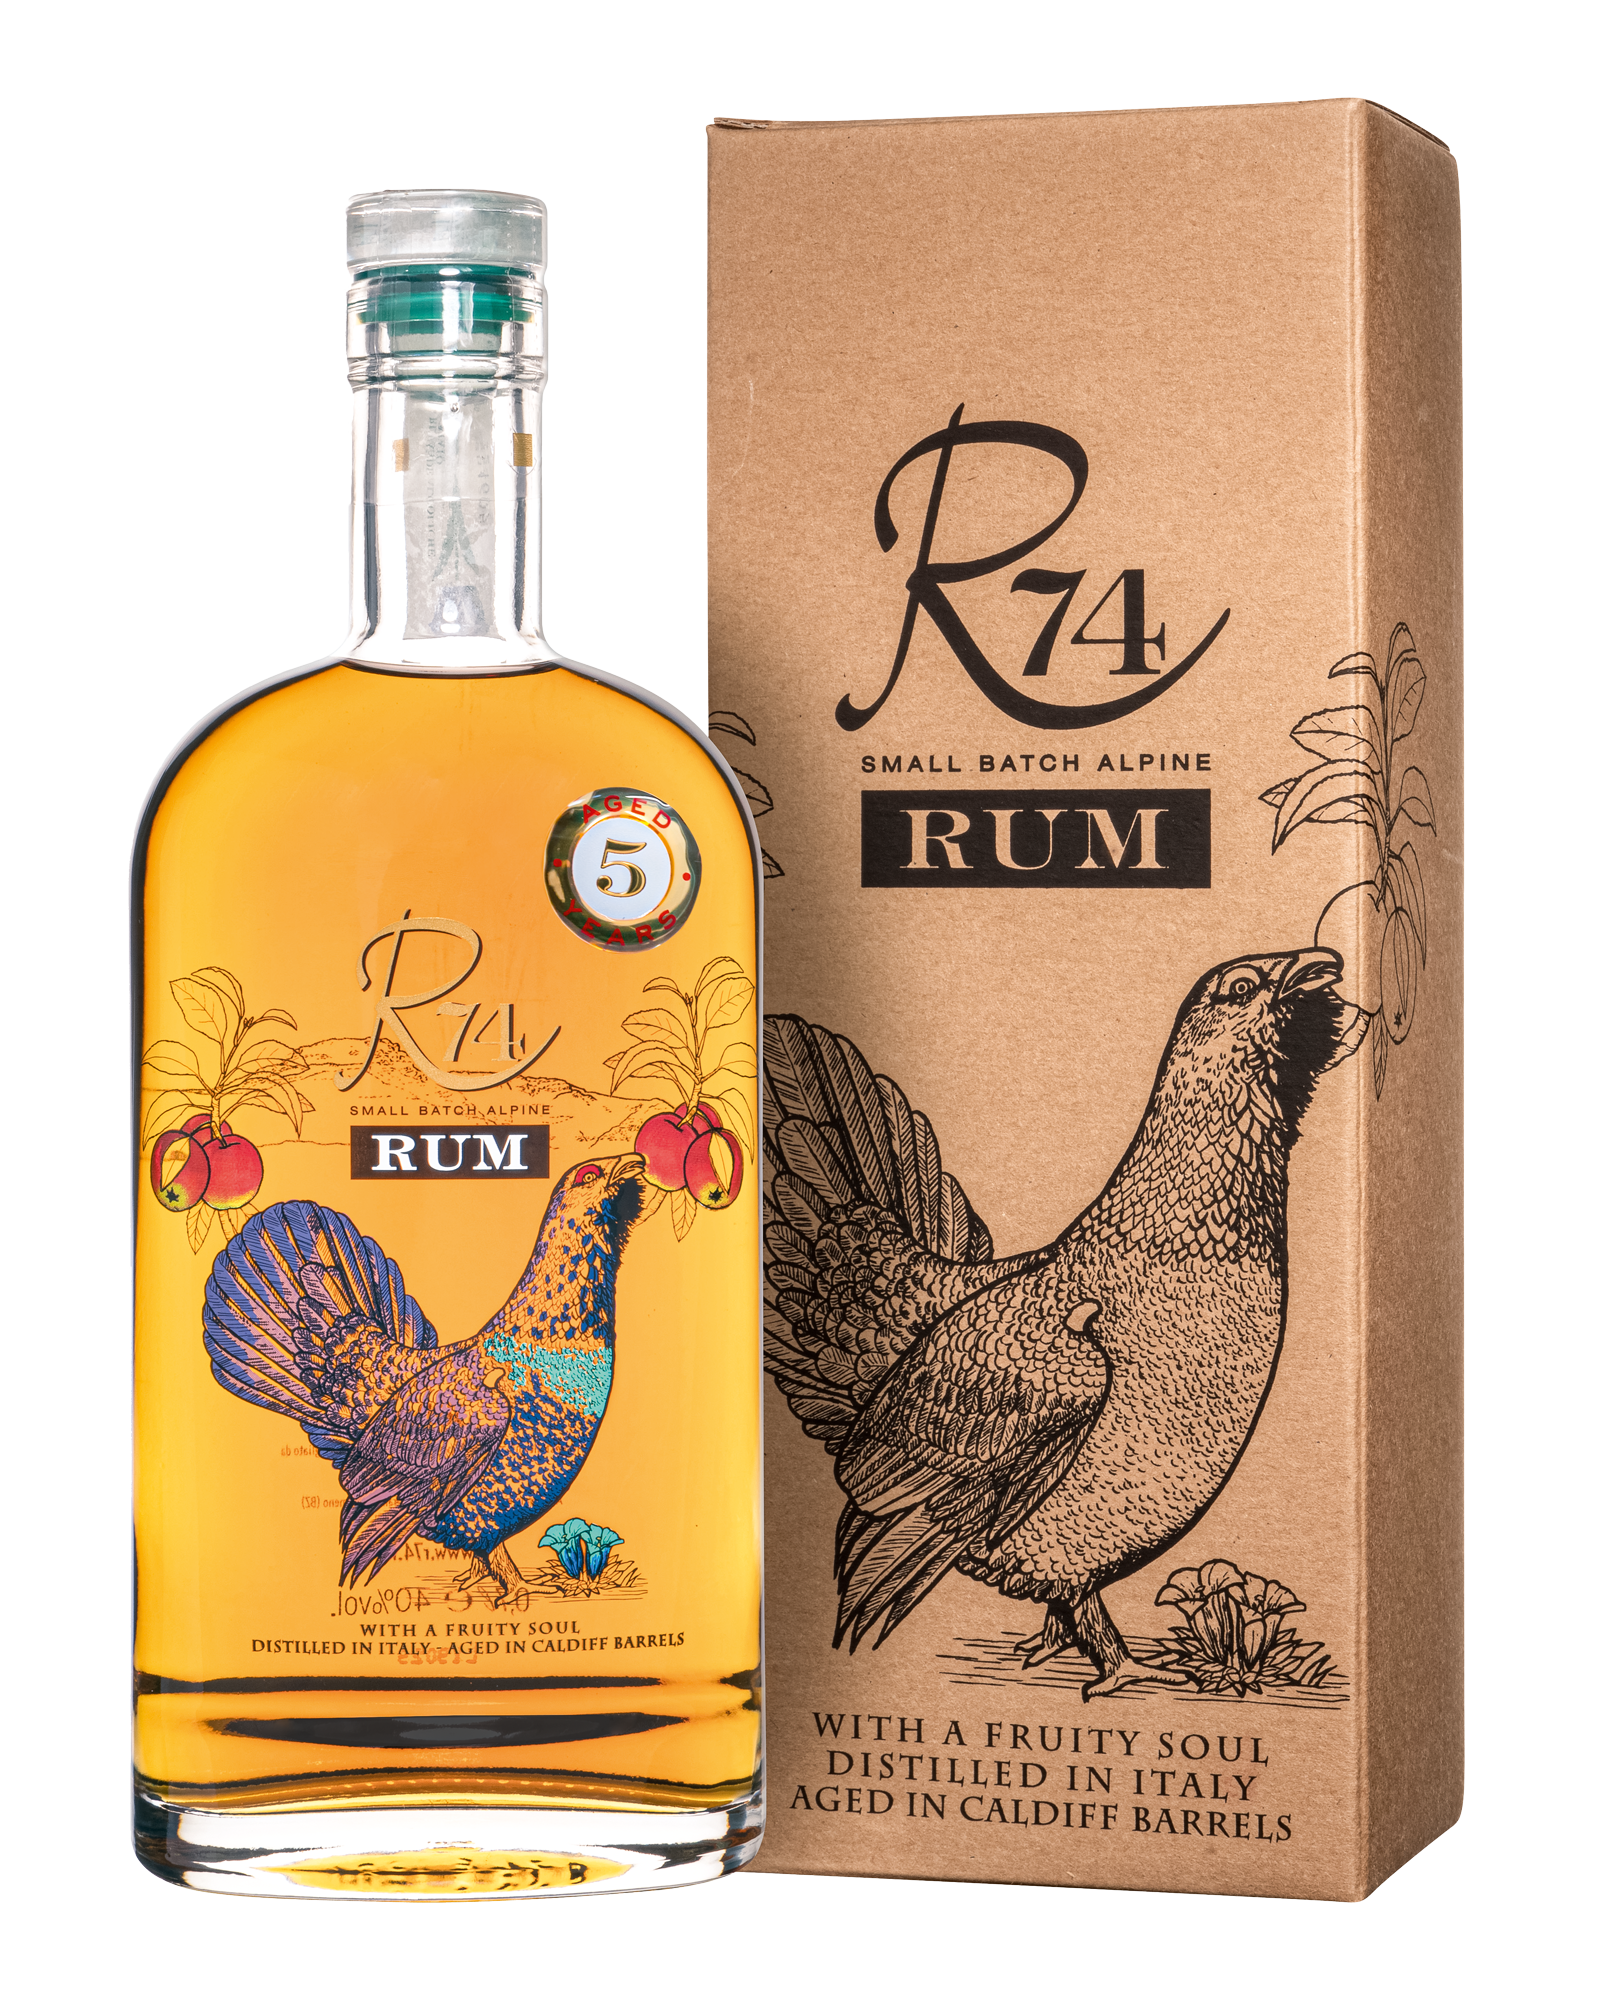 R74 Rum Aged